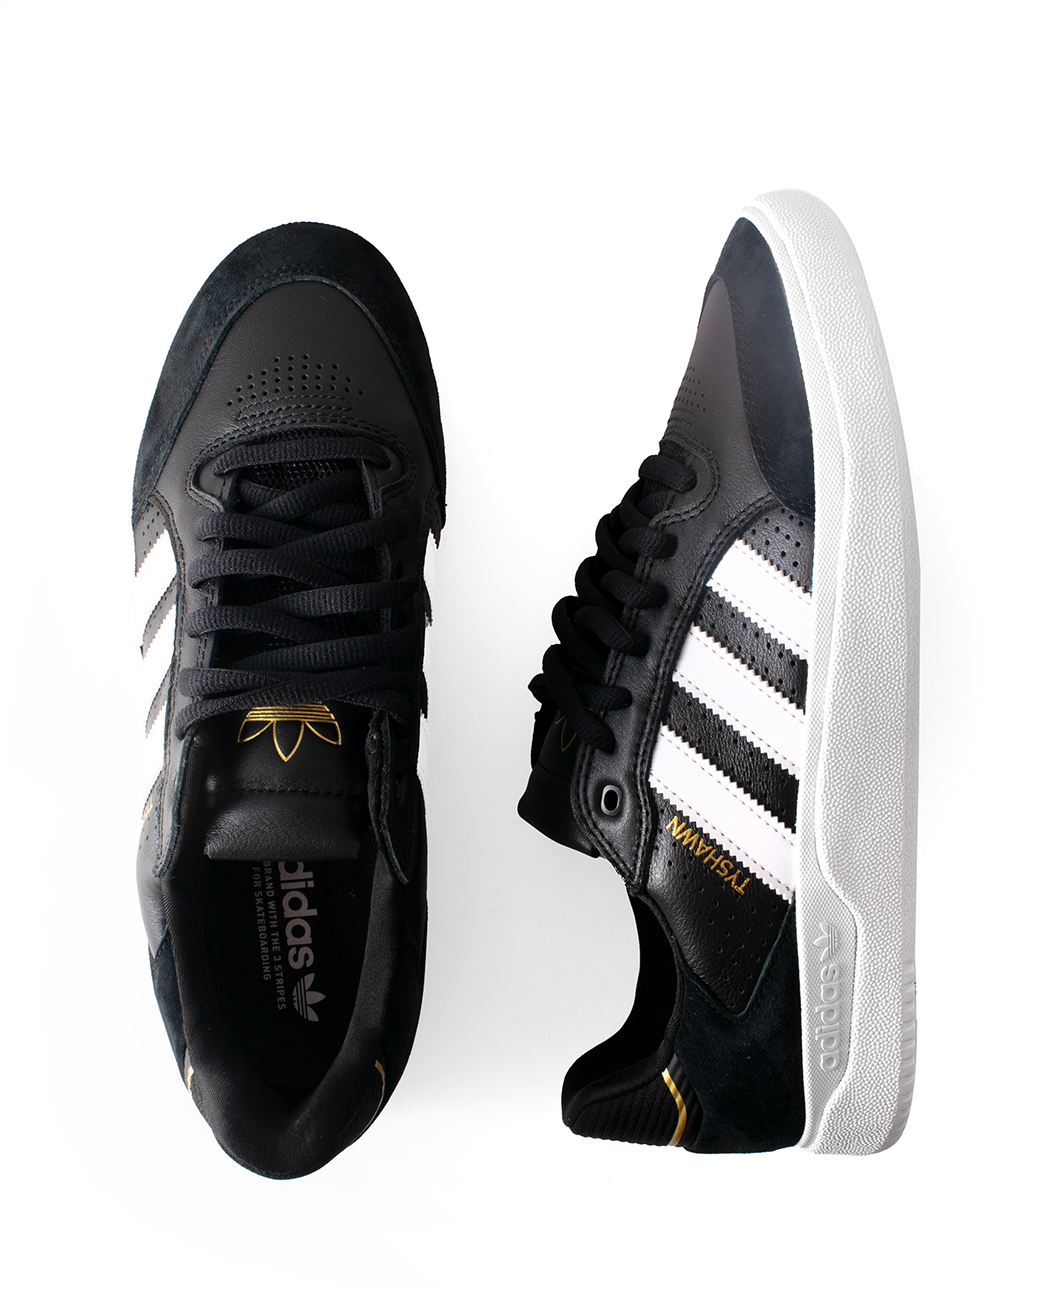 Adidas Tyshawn Low Black/White/Gold